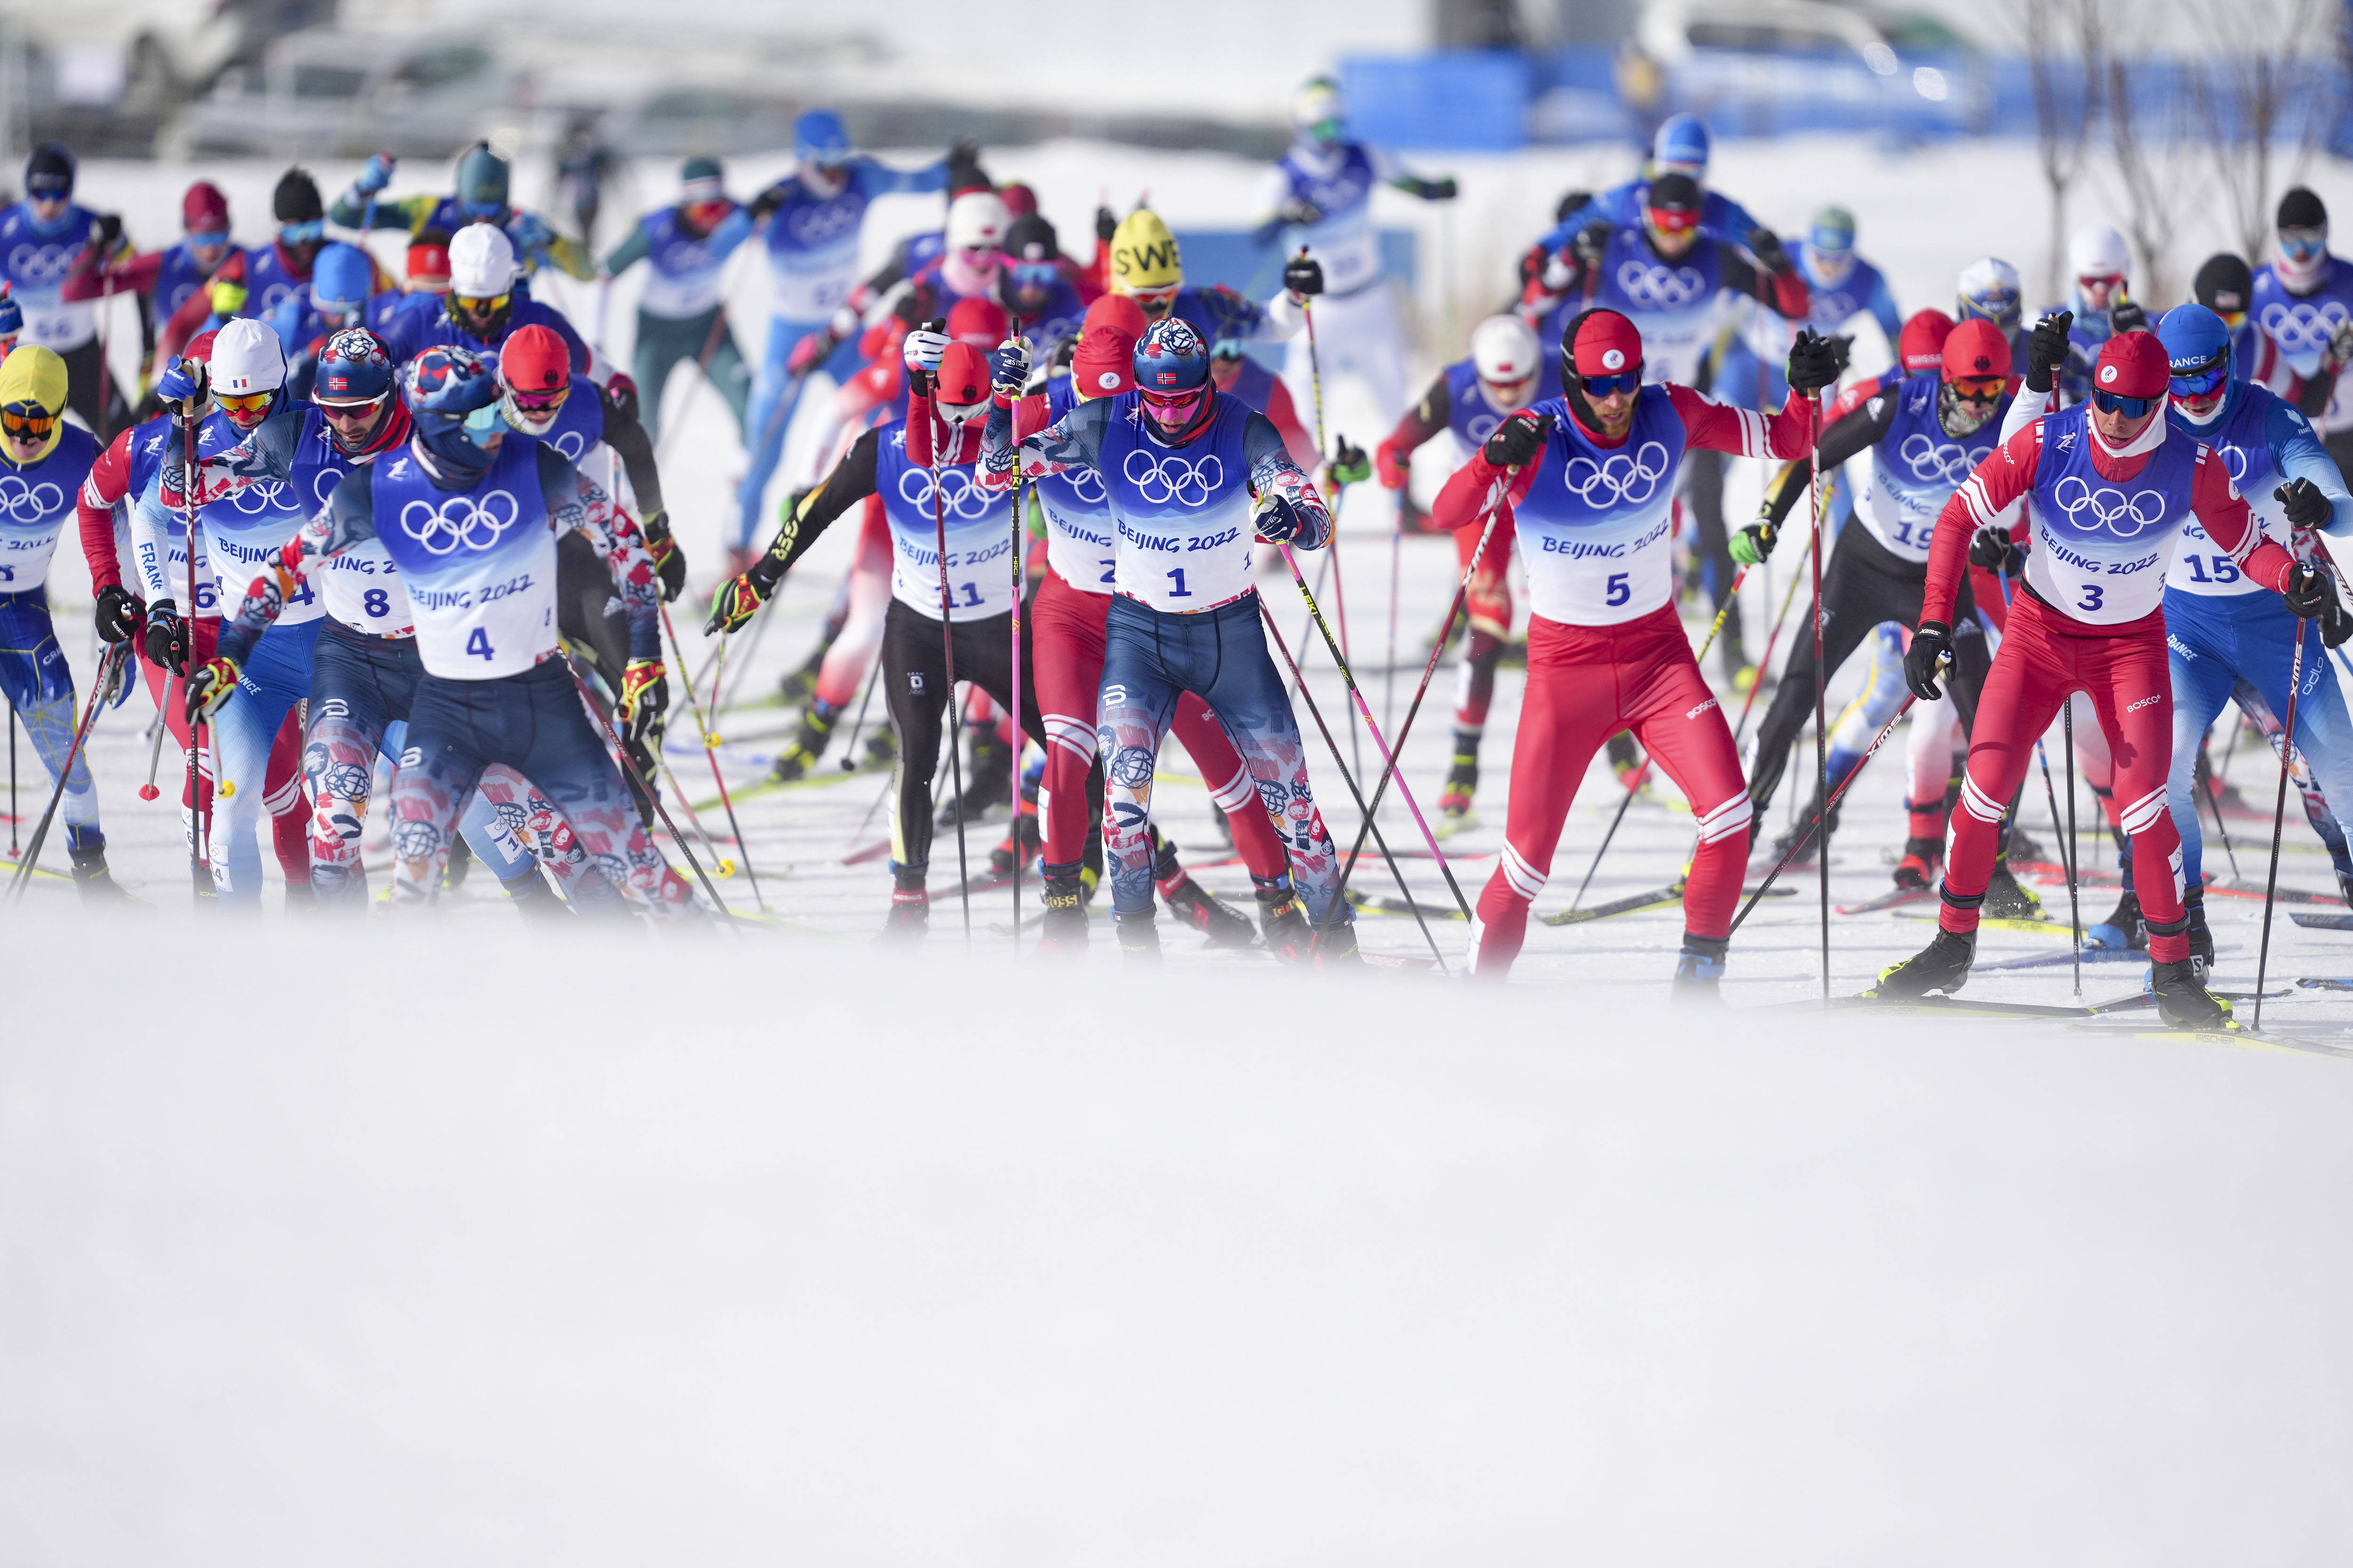 当日,北京2022年冬奥会越野滑雪男子50公里集体出发(自由技术)比赛在